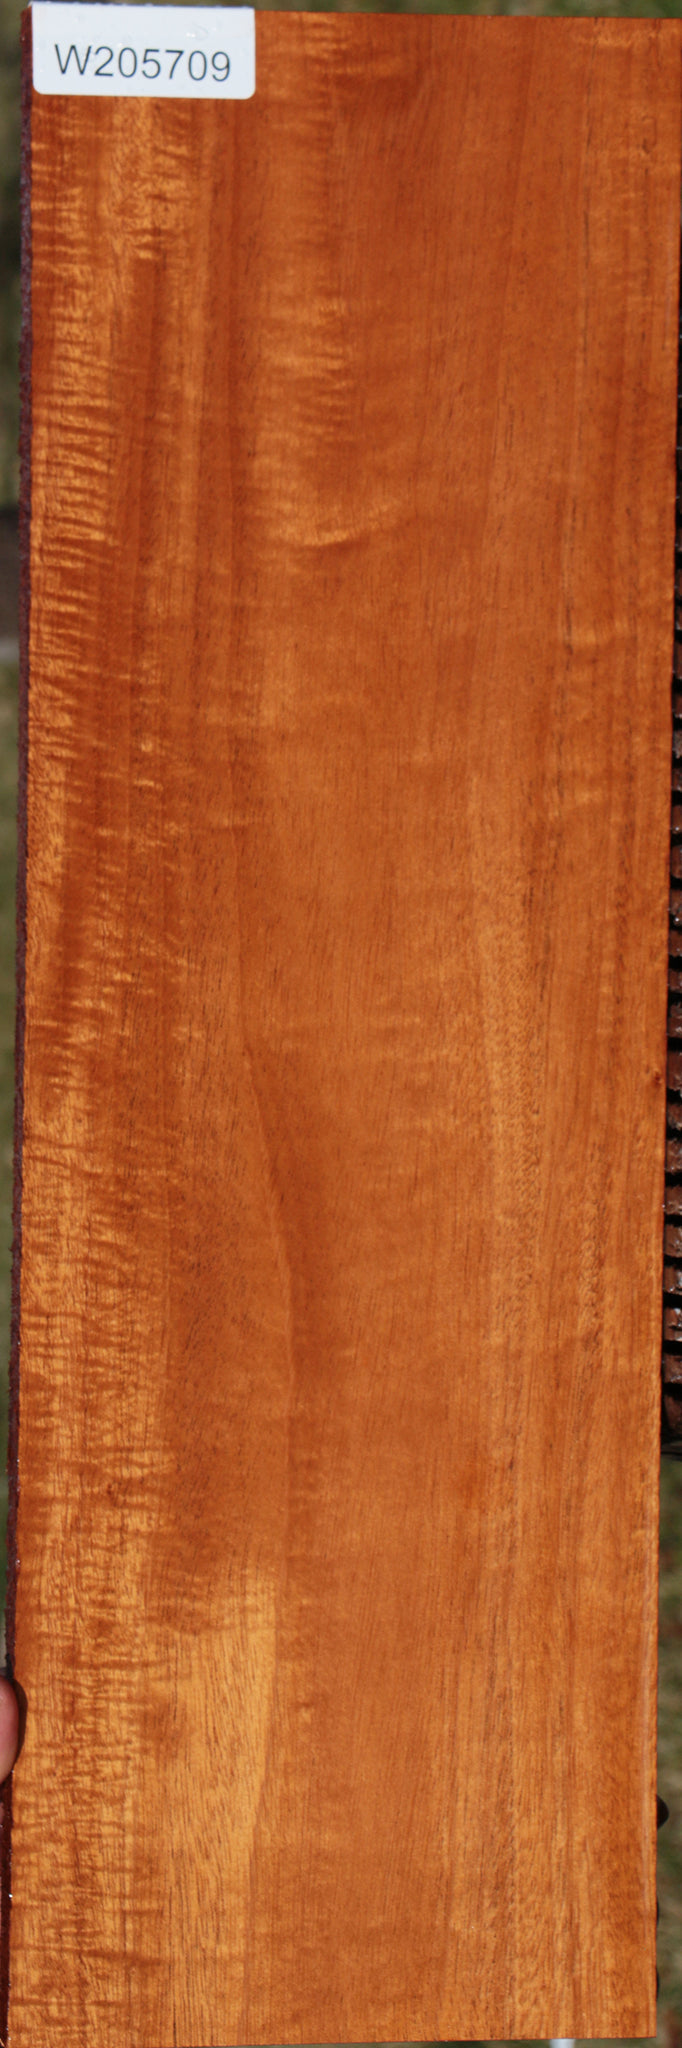 Honduras Mahogany Lumber